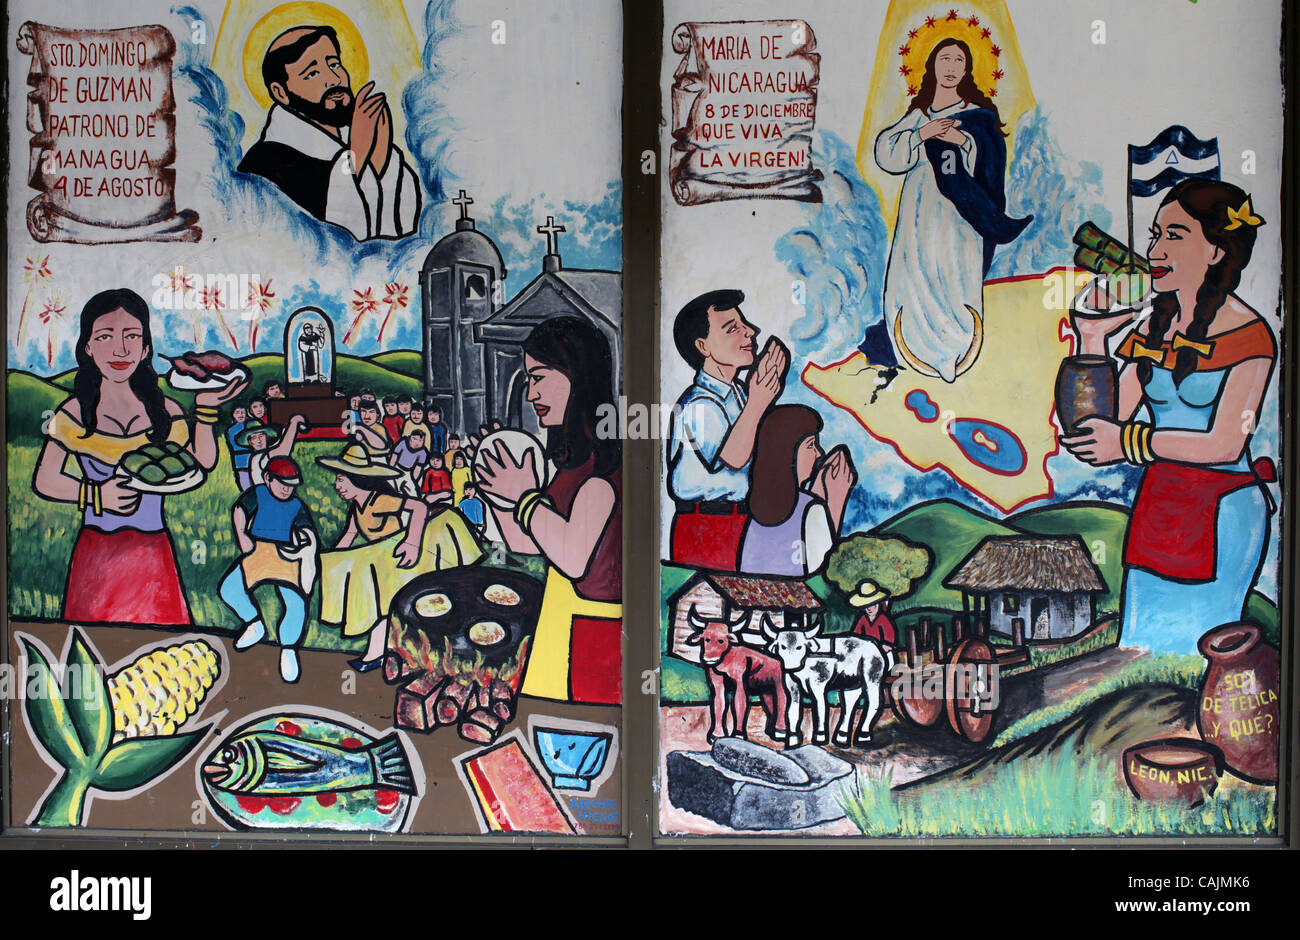 Jan 11, 2011 - Miami, Floride, États-Unis - wall mural cubaine dans la communauté de l'influence de Cuba la petite havane. Little Havana (La Pequena Habana) est un quartier au sein de la ville de Miami. La maison à beaucoup de résidents immigrés cubains. Little Havana est noté comme un centre social, culturel et politique activi Banque D'Images